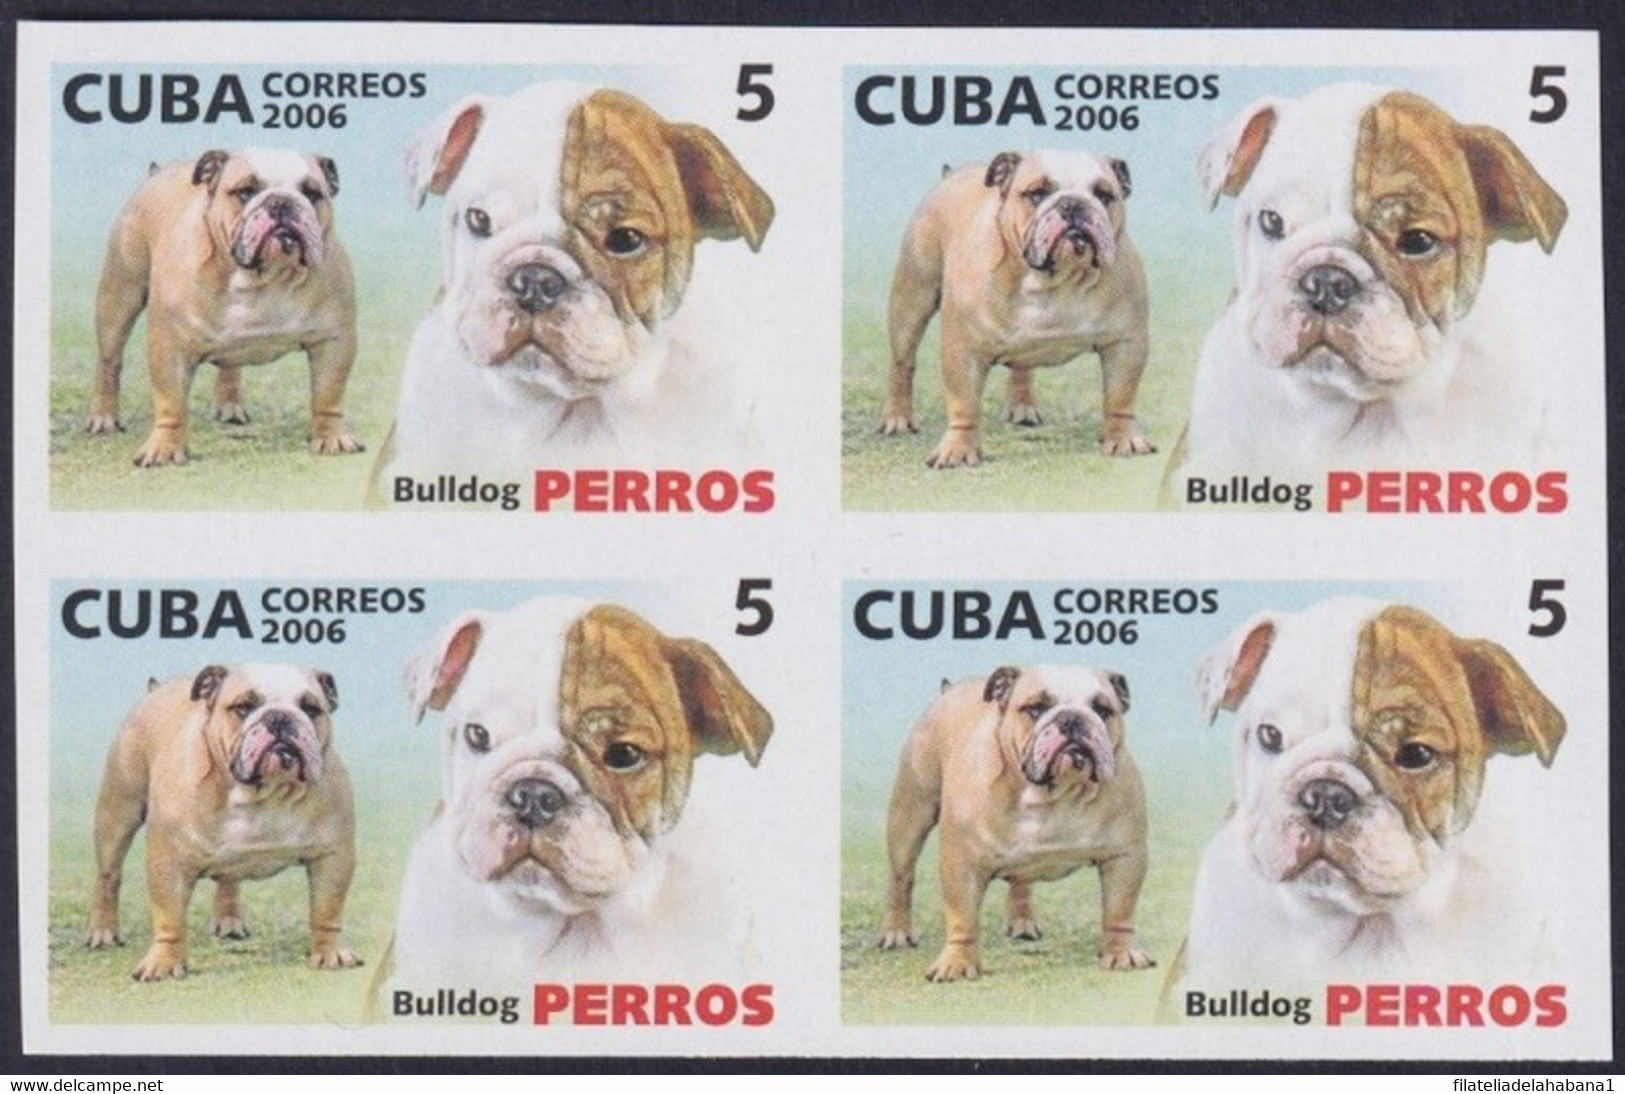 2006.734 CUBA 2006 5c MNH IMPERFORATED PROOF PERROS DOG BULLDOG. - Sin Dentar, Pruebas De Impresión Y Variedades